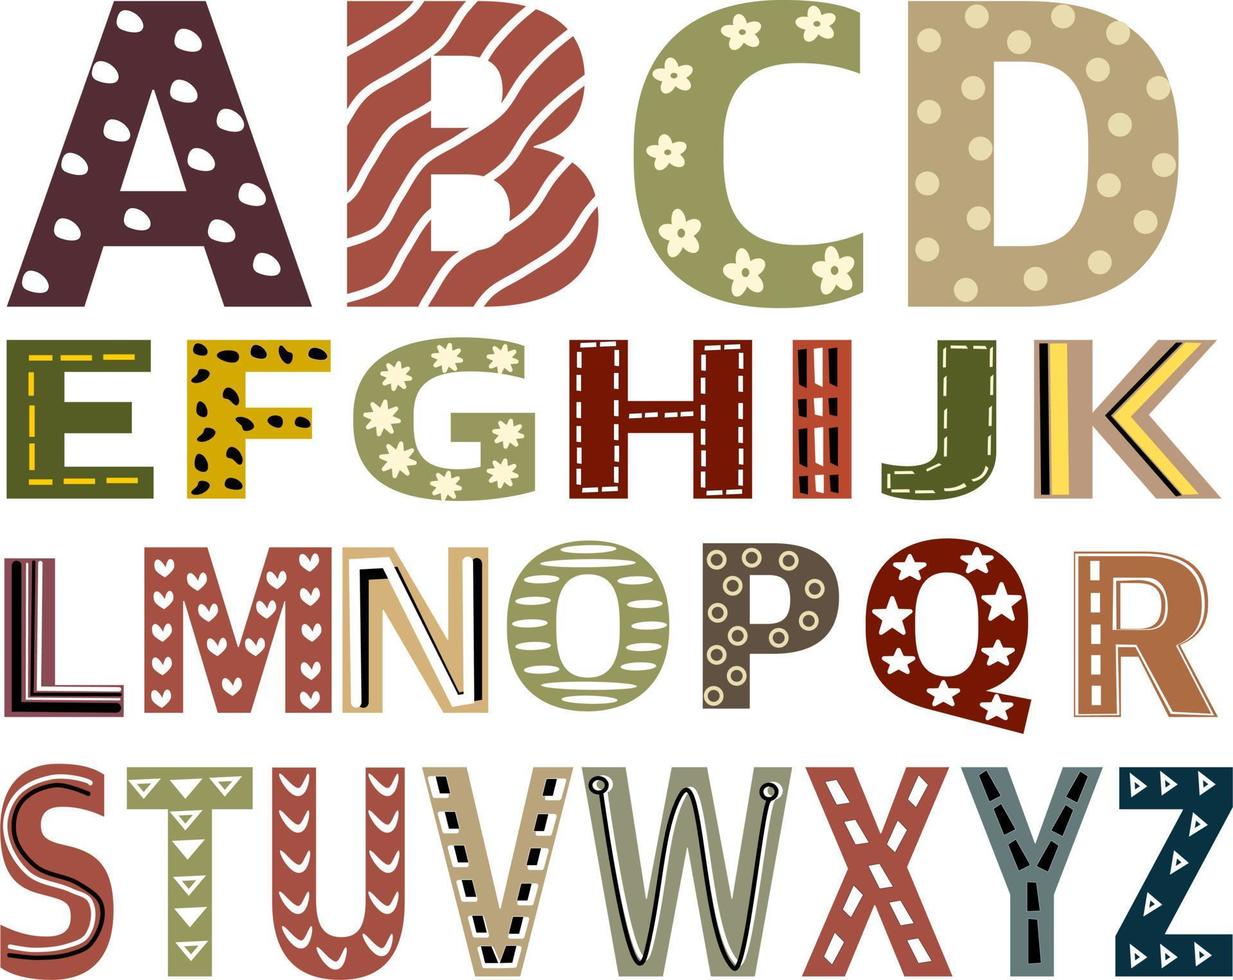 schattig fonts Engels alfabet versierd met dots , geometrie, lijnen en krabbels. hoofdstad brief vector illustratie. kinderen doopvont kleurrijk ontwerp.